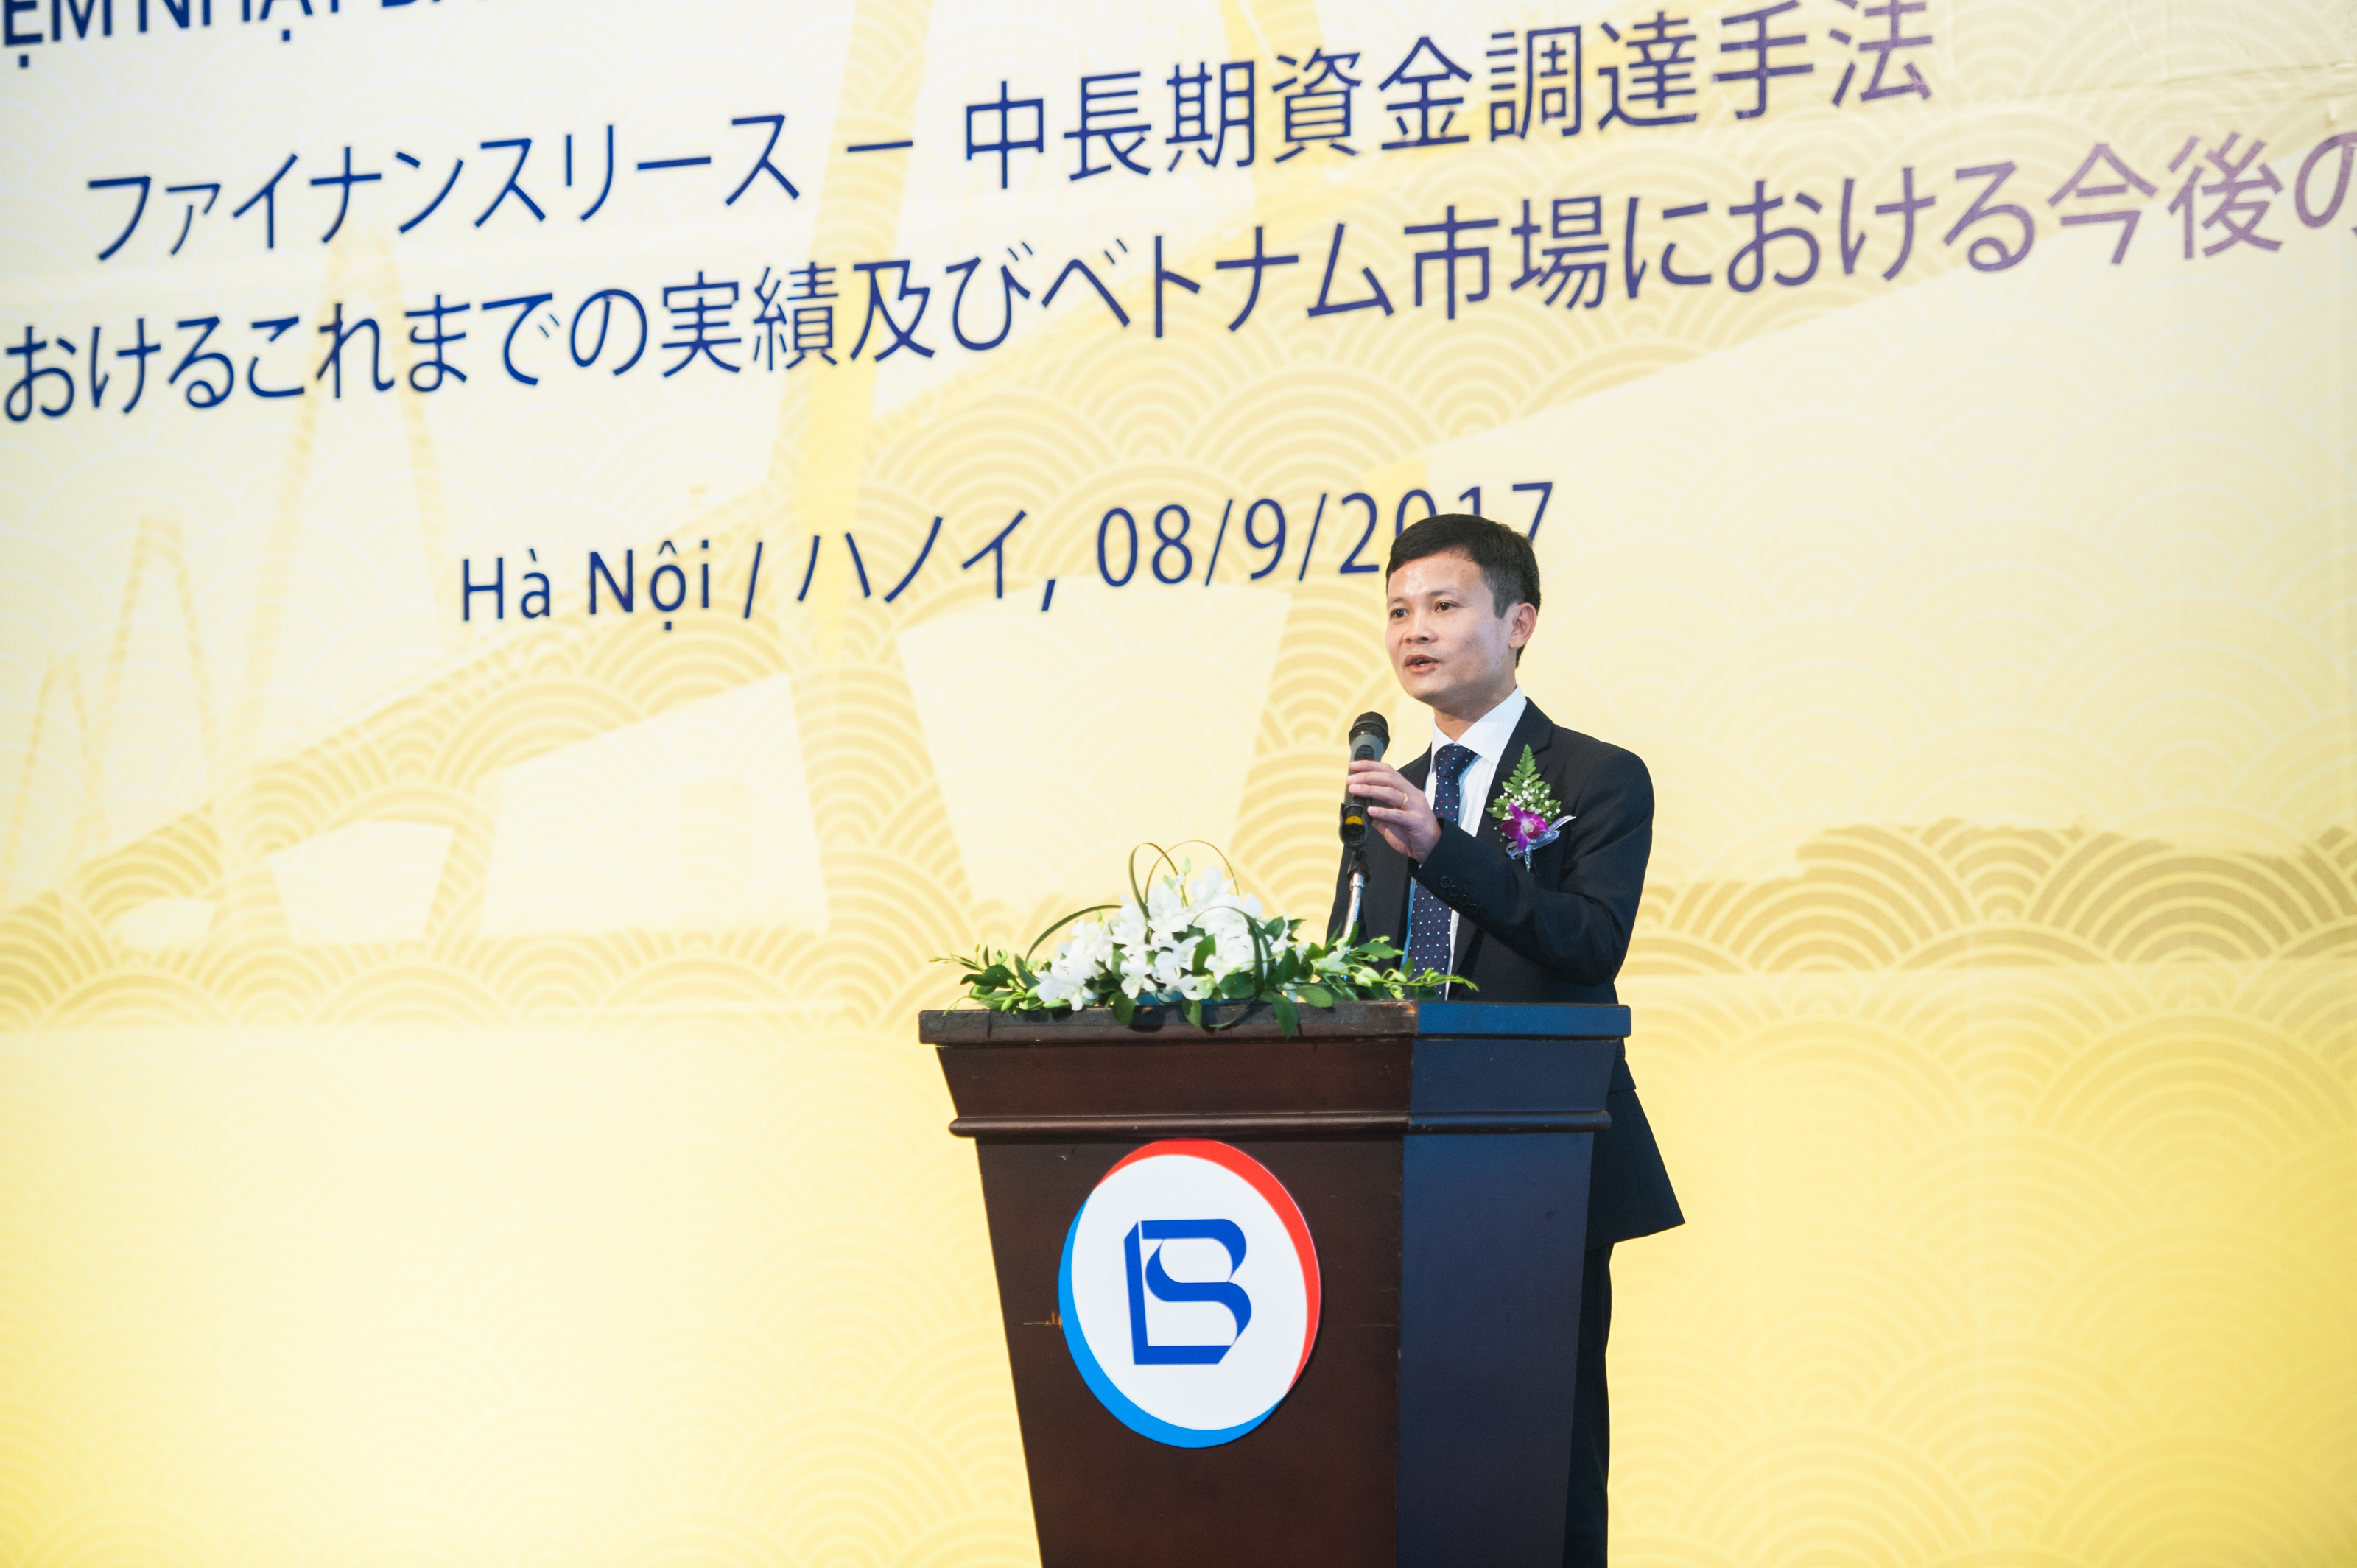 Mr. Nguyễn Thiều Sơn - CEO of BSL